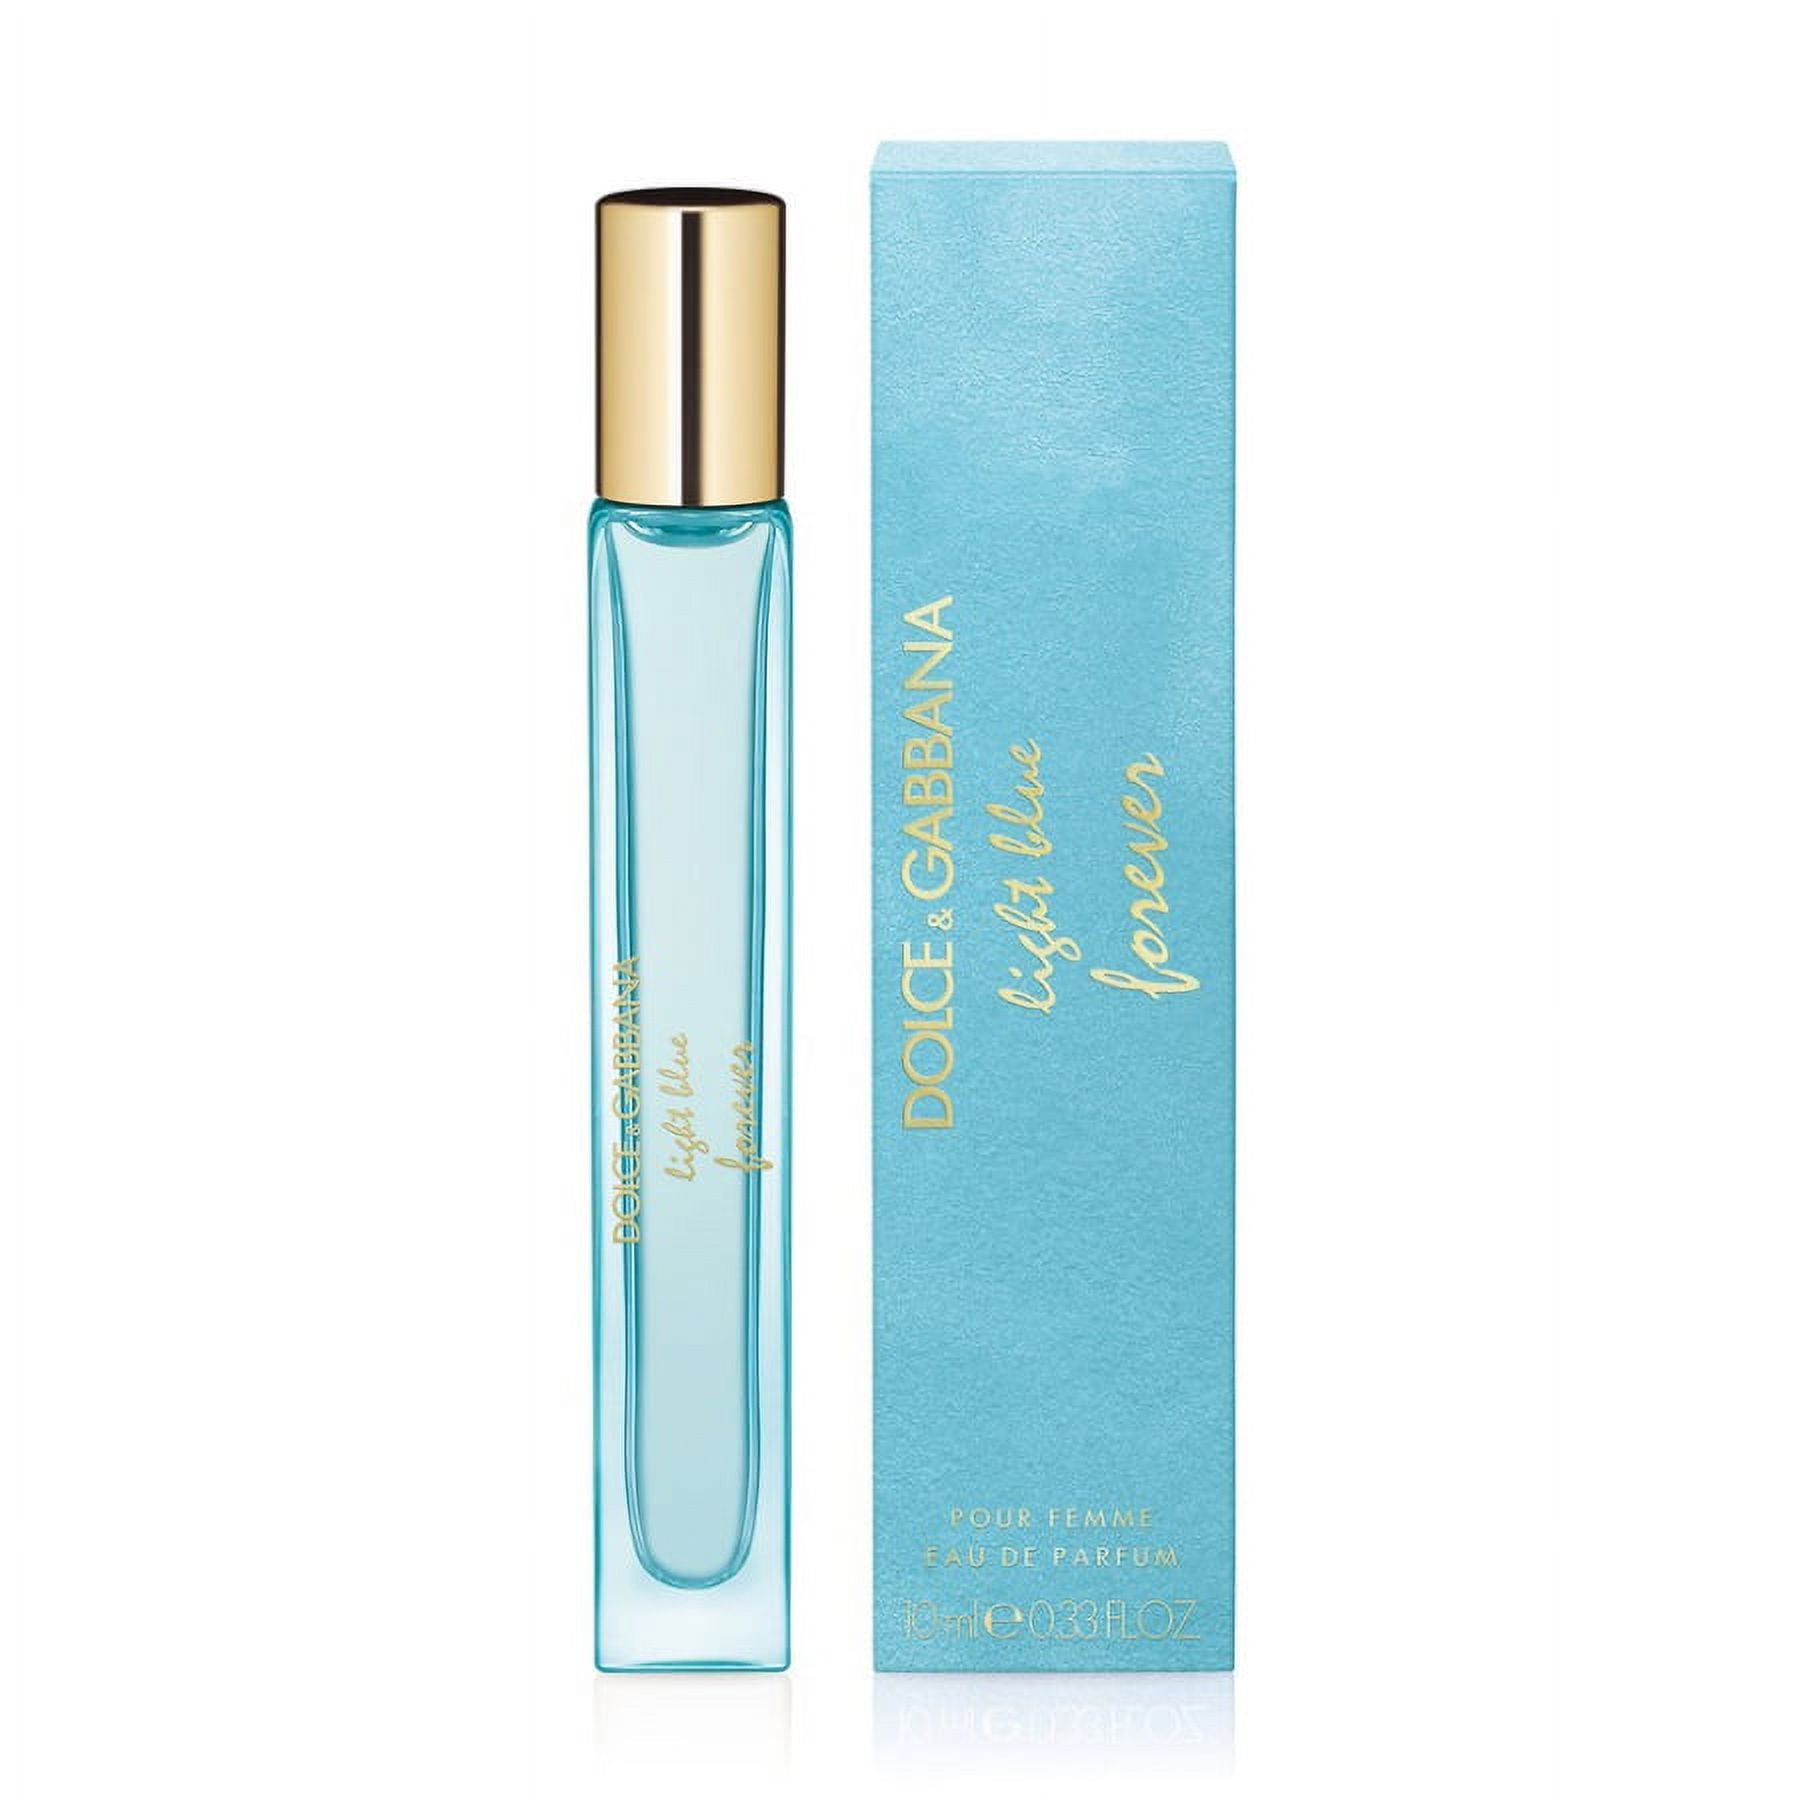 Dolce & Gabbana Light Blue Forever for Women Eau de Parfum Travel Spray  0.33 oz